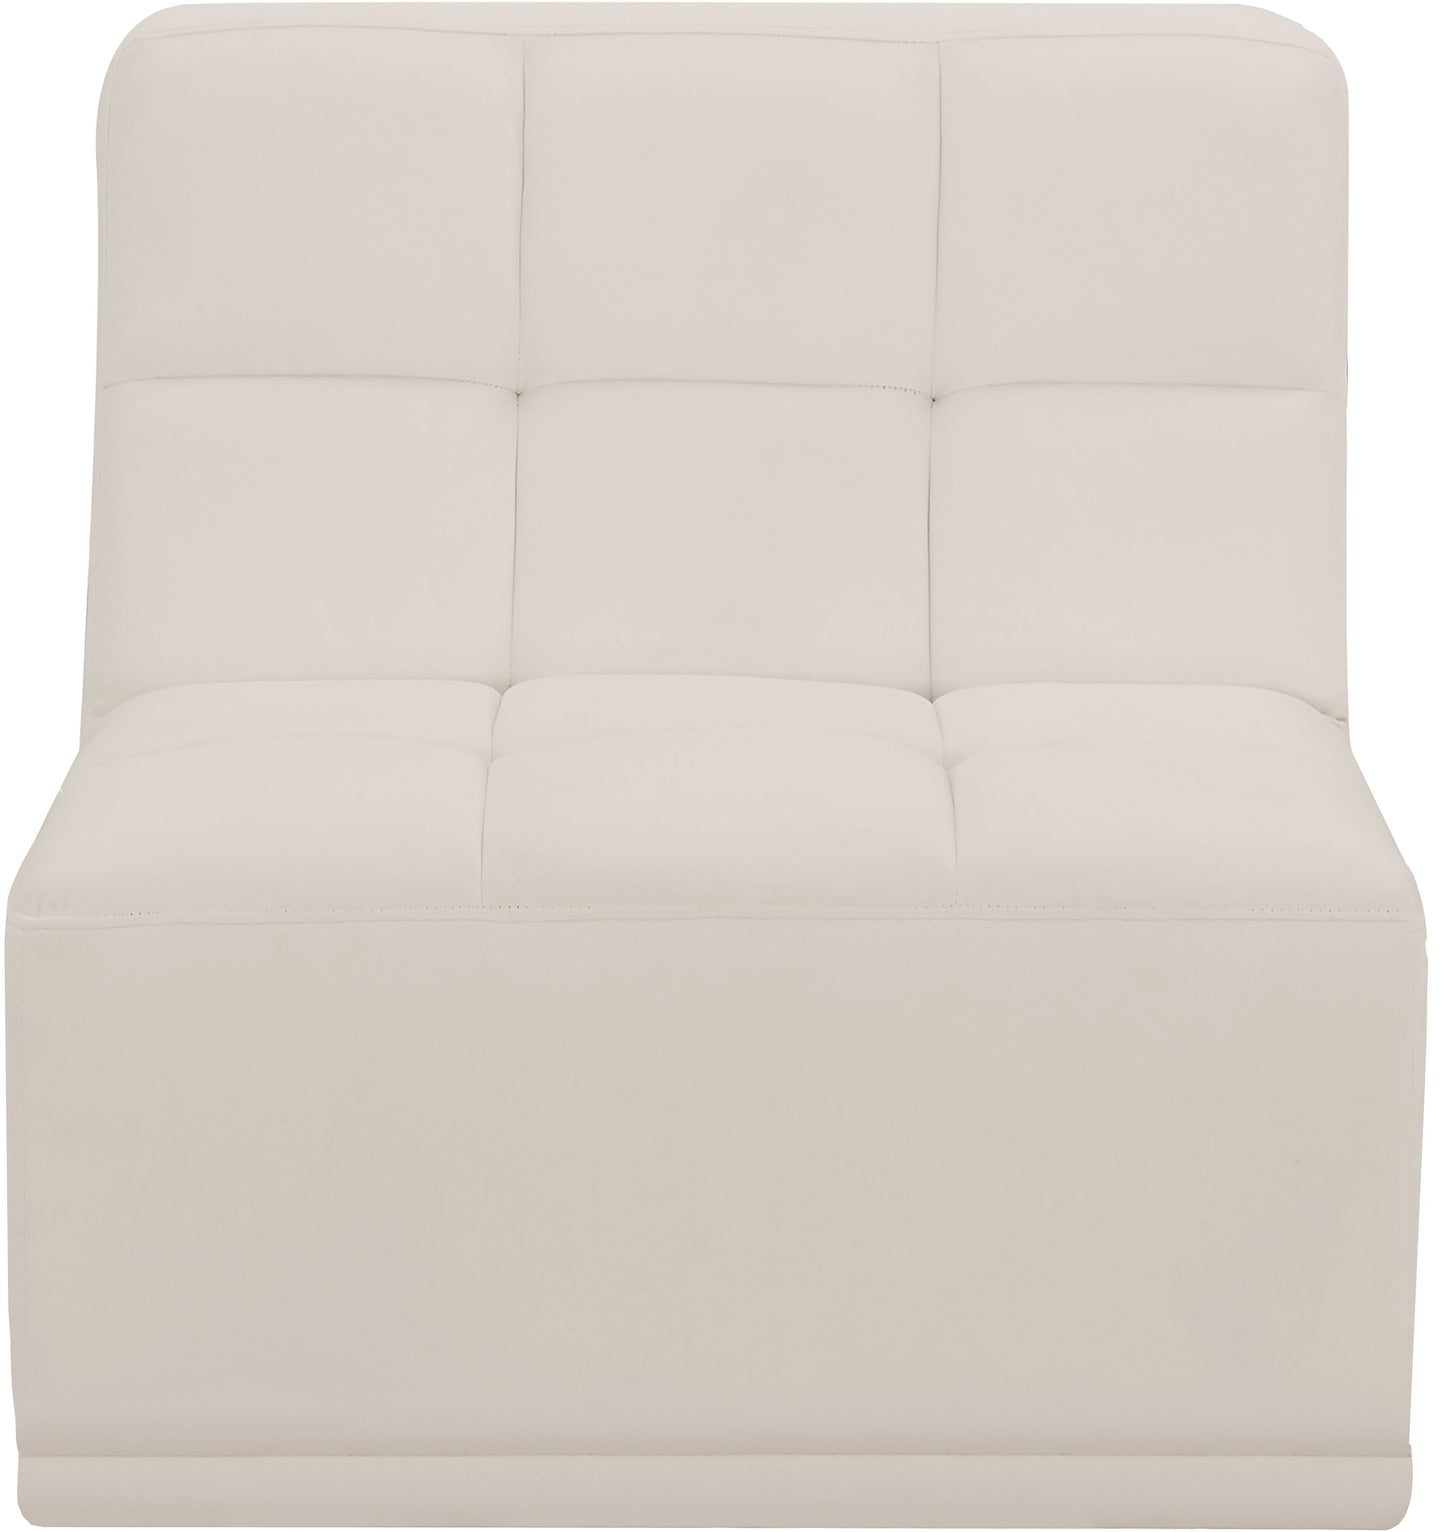 Relax - Armless Chair - Cream